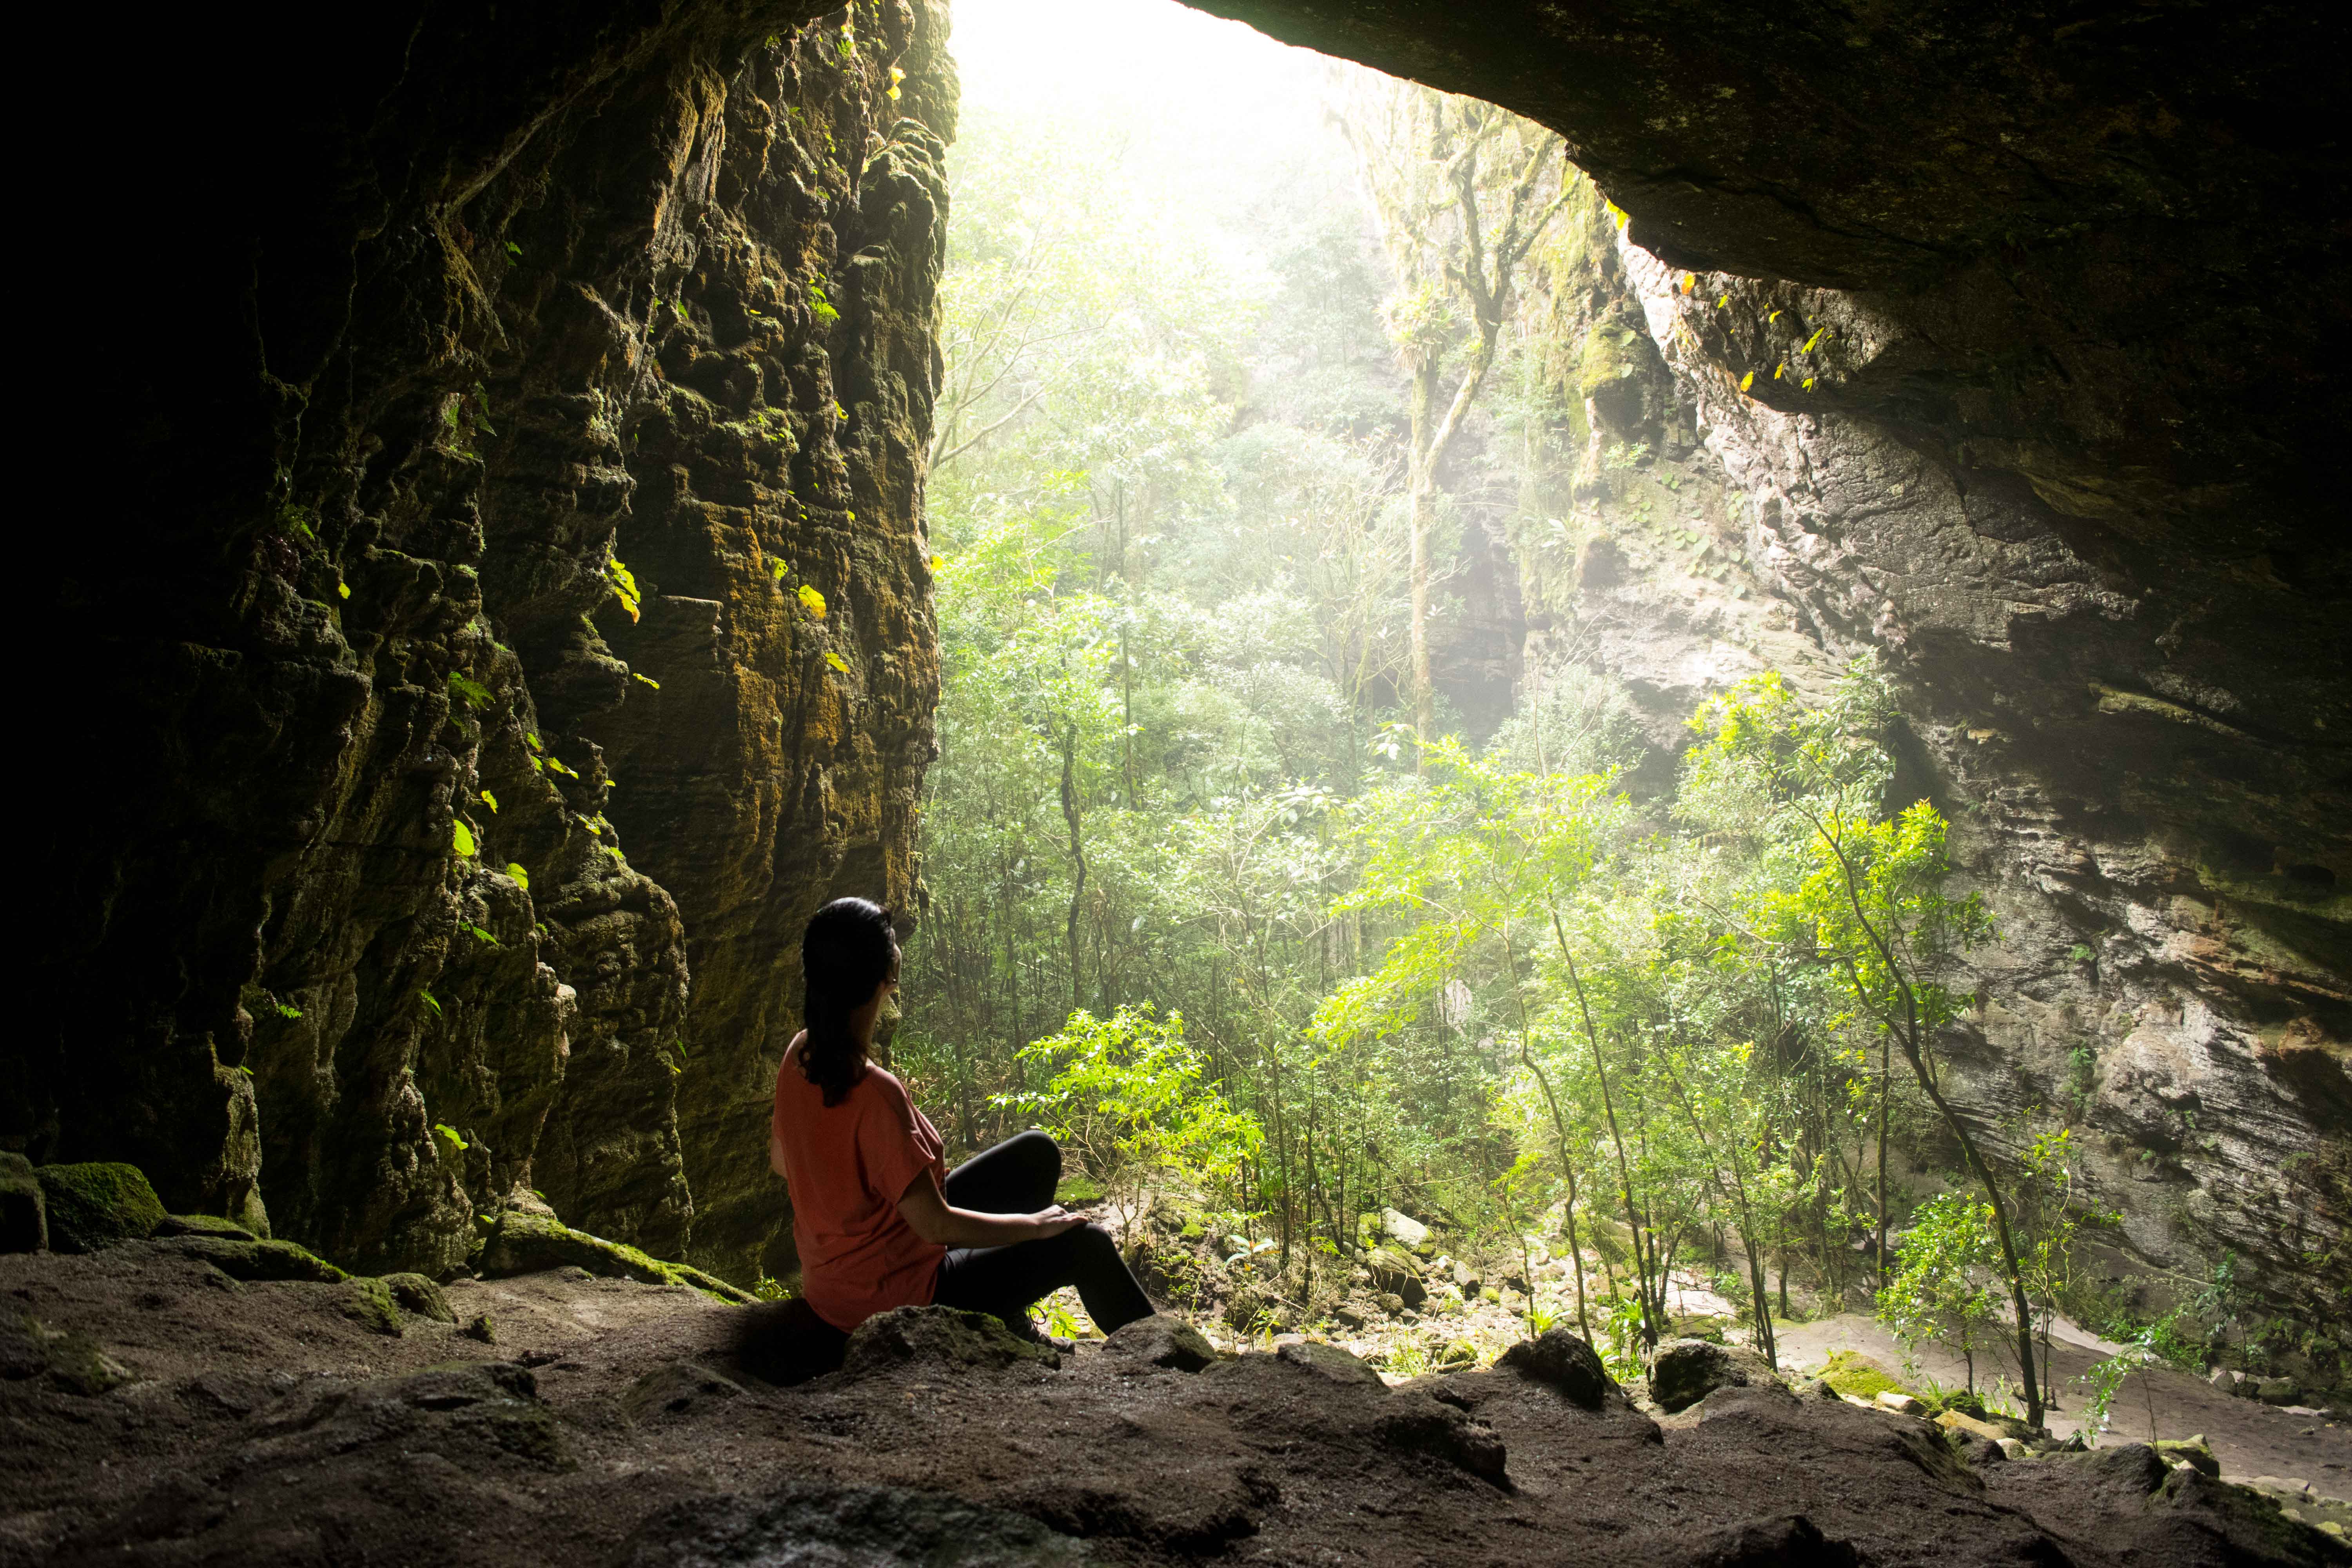 O que fazer em Ibitipoca: visitar o parque, suas grutas e cachoeiras.